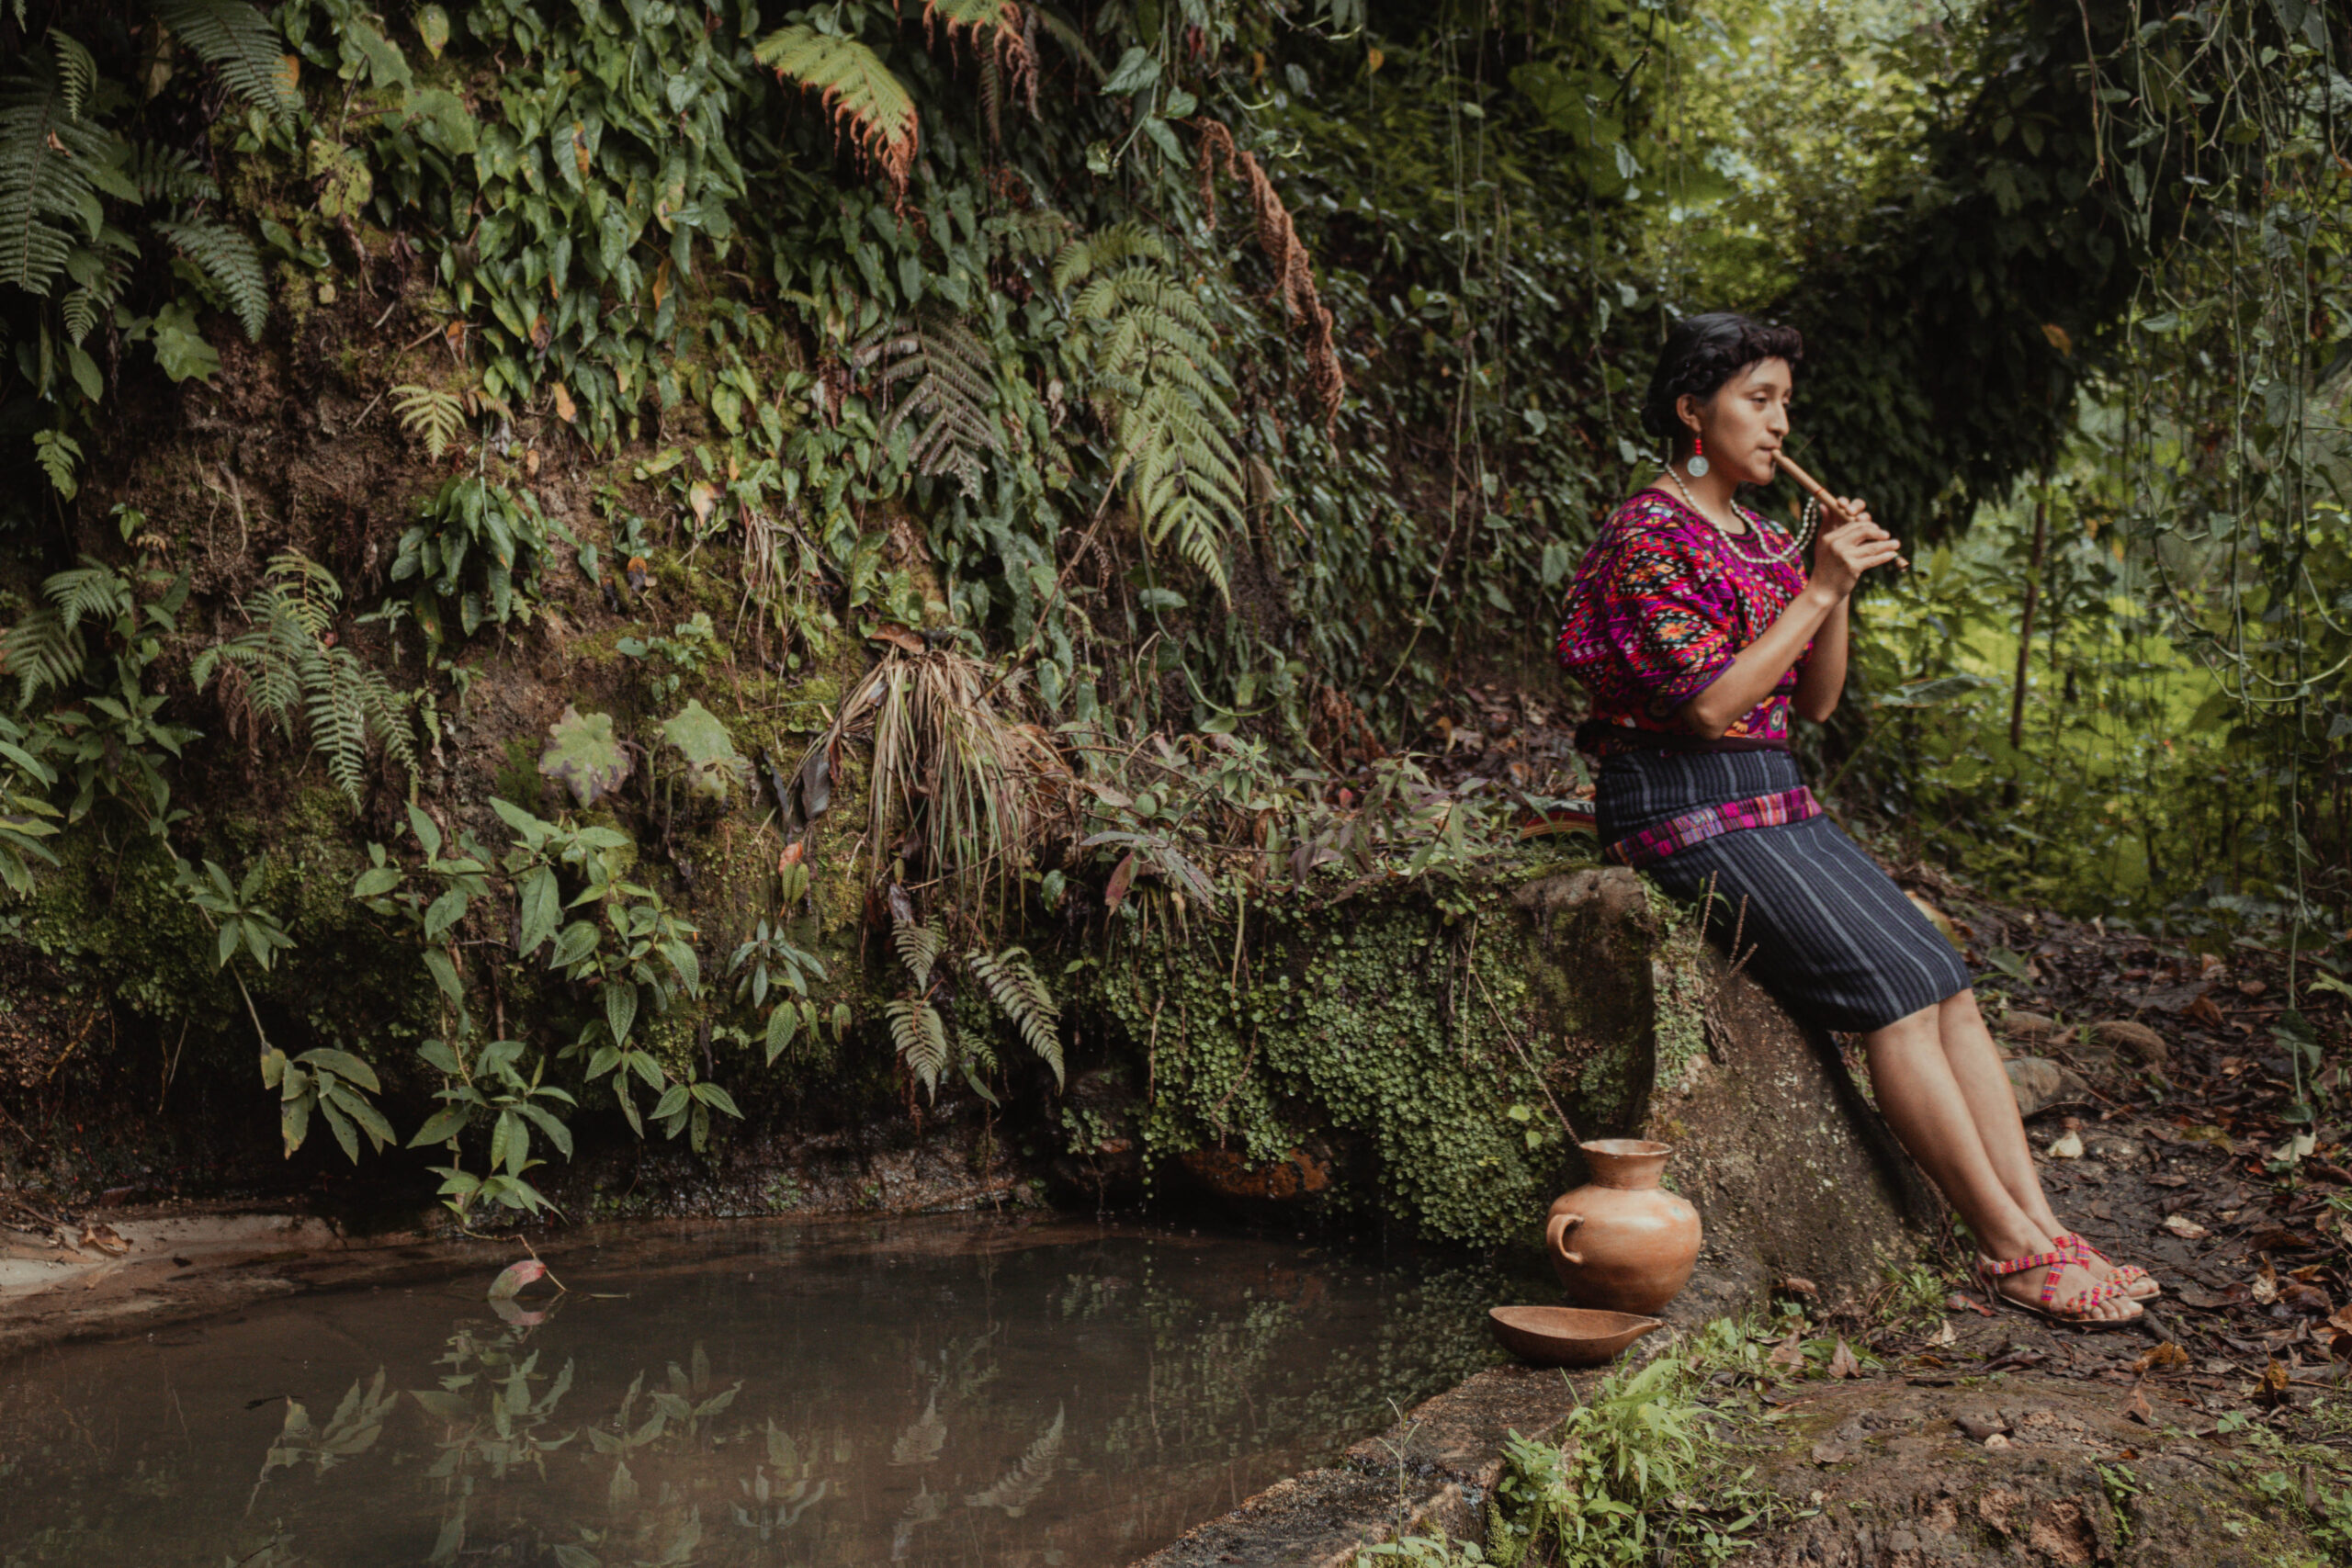 Jovem indígena do Povo Quiché Maya da Guatemala ao lado de uma fonte de água com oferendas em agradecimento à natureza. 
Ganhadores do Concurso de Fotografia “Soluções Inovadoras dos Povos Indígenas”
Nome da foto: Filhos da terra. 
Autor: Alexander Pérez Ventura